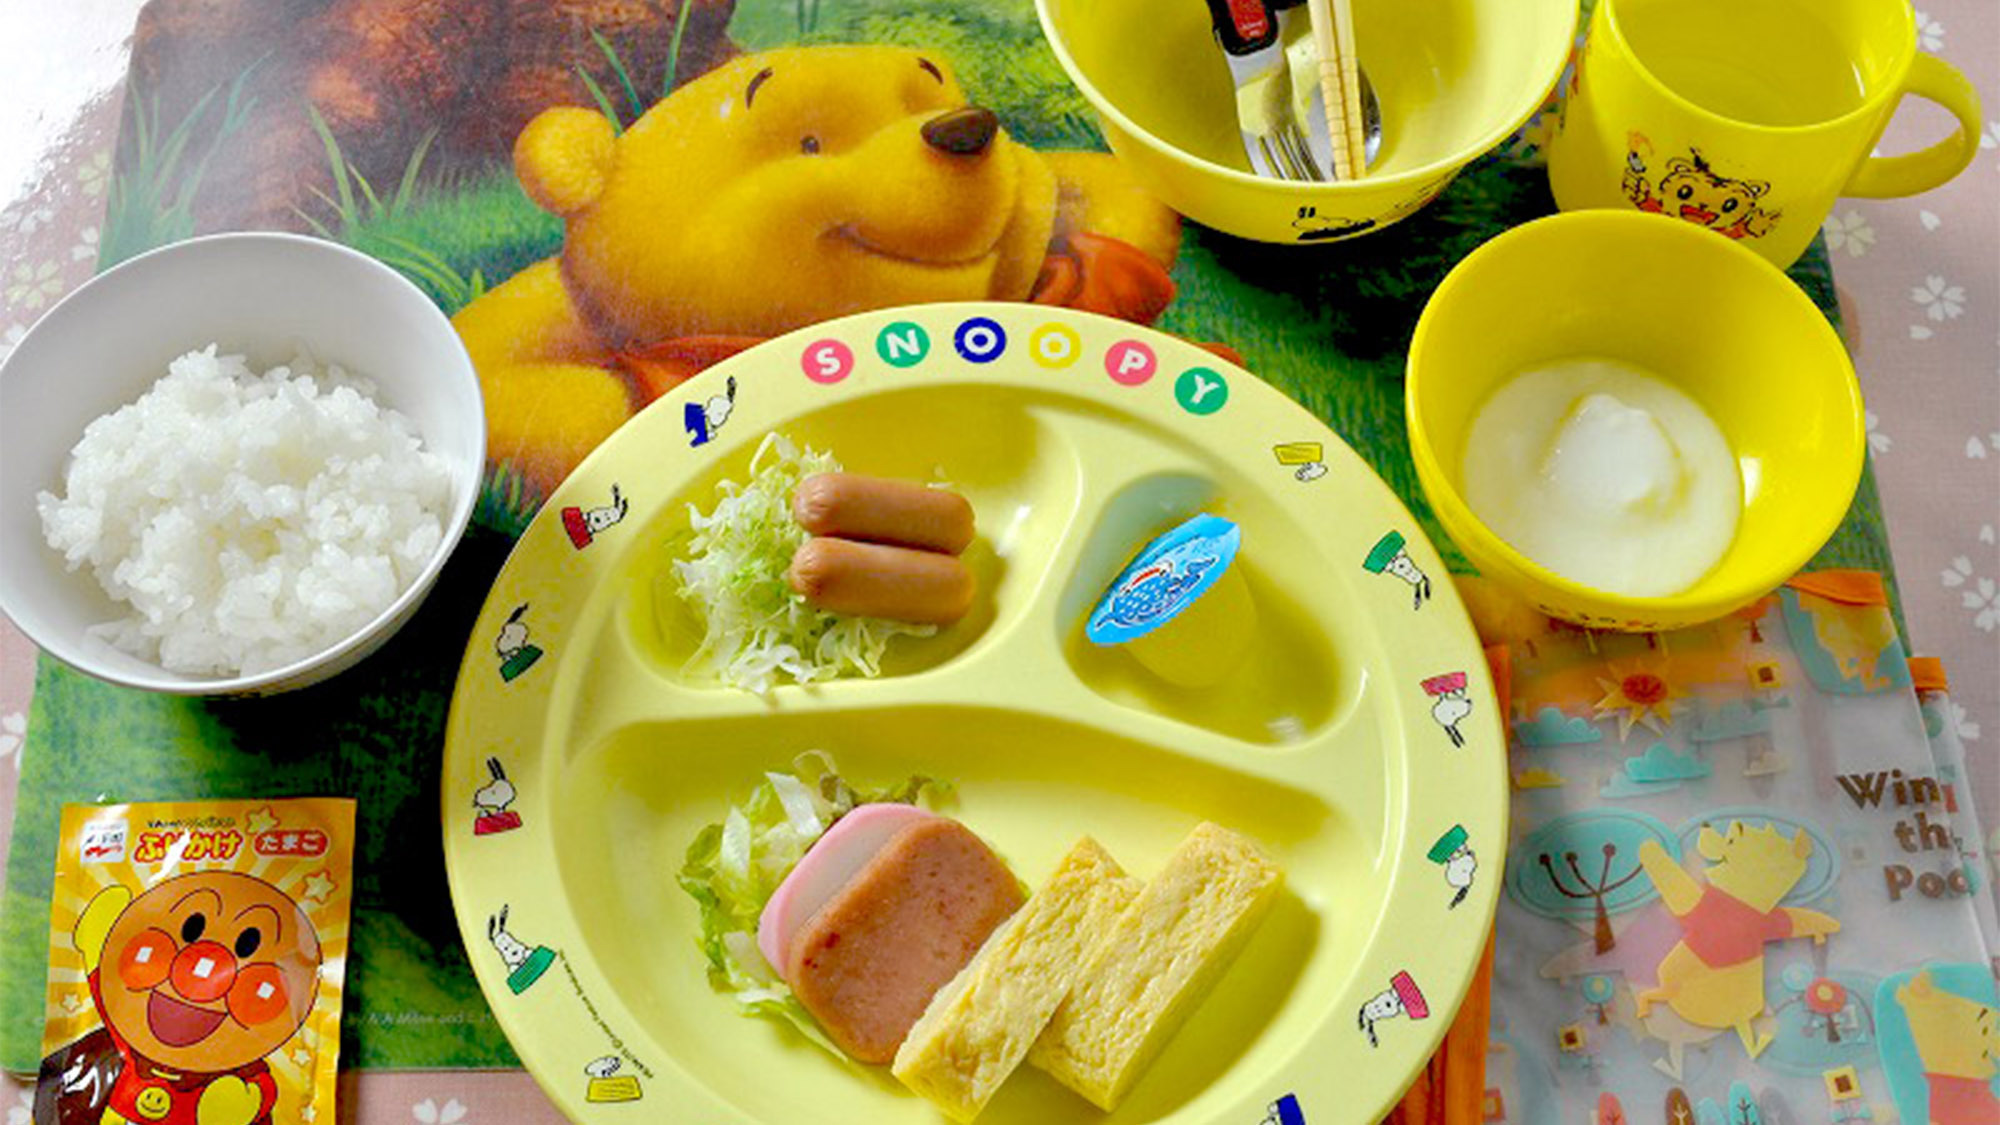 ・【幼児用朝食一例】お子様用の食器でご用意致します